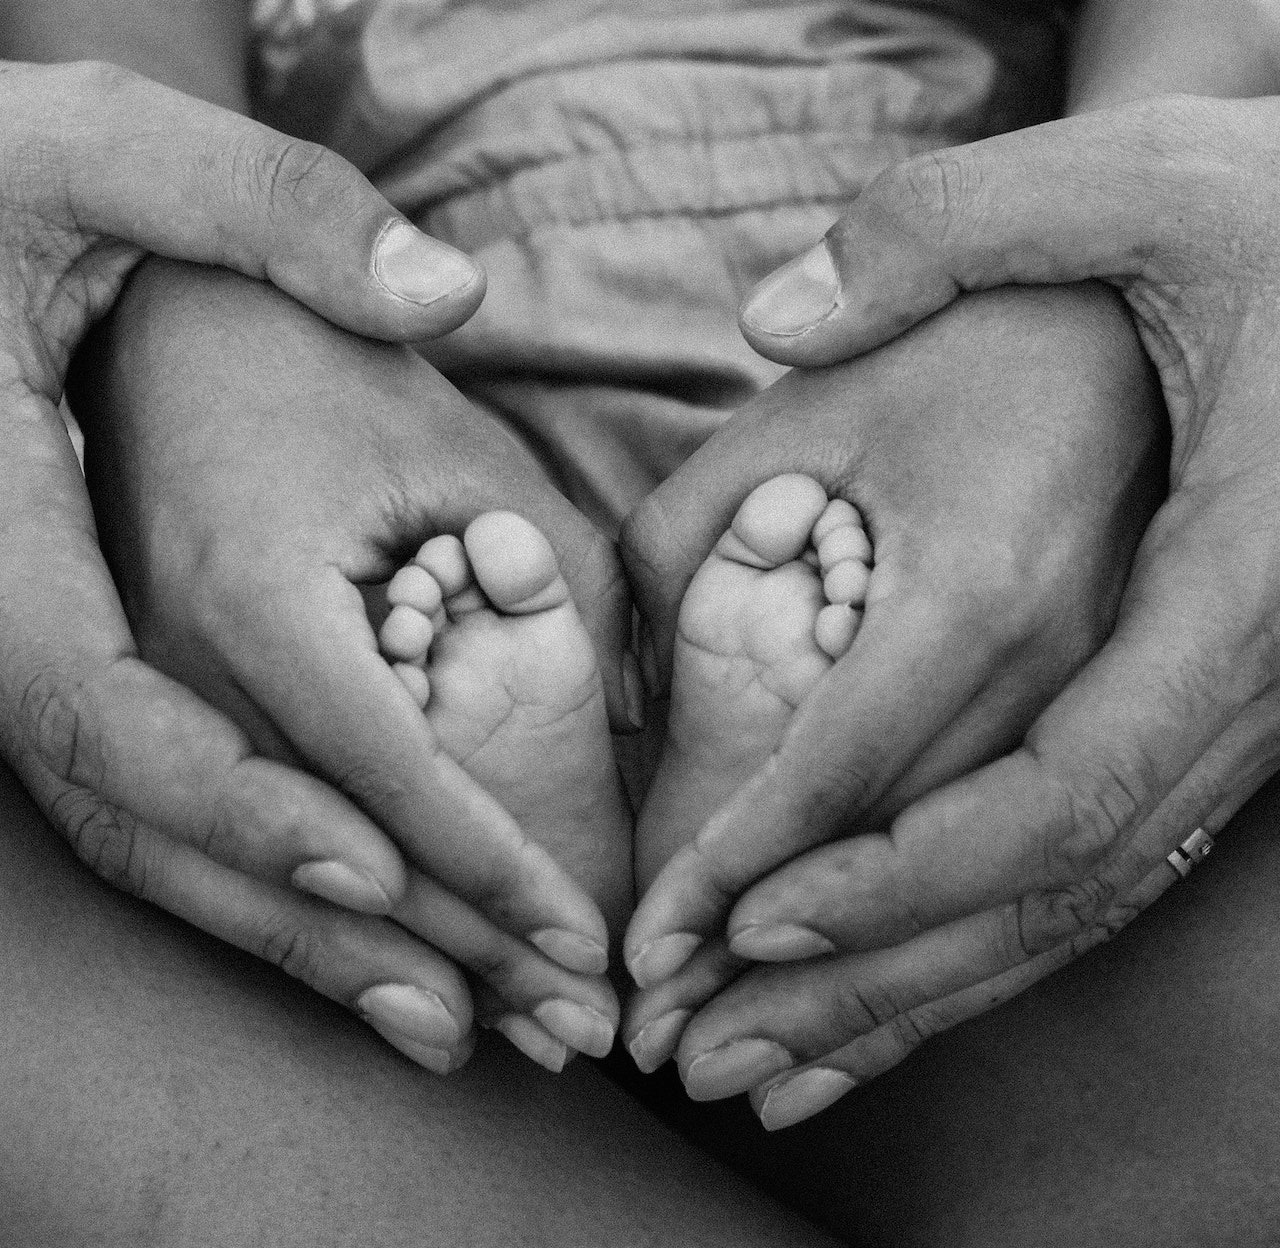 Mão de mãe acariciando ternamente os pequenos pés de seu bebê, simbolizando a cidadania Jus Solis através do nascimento.